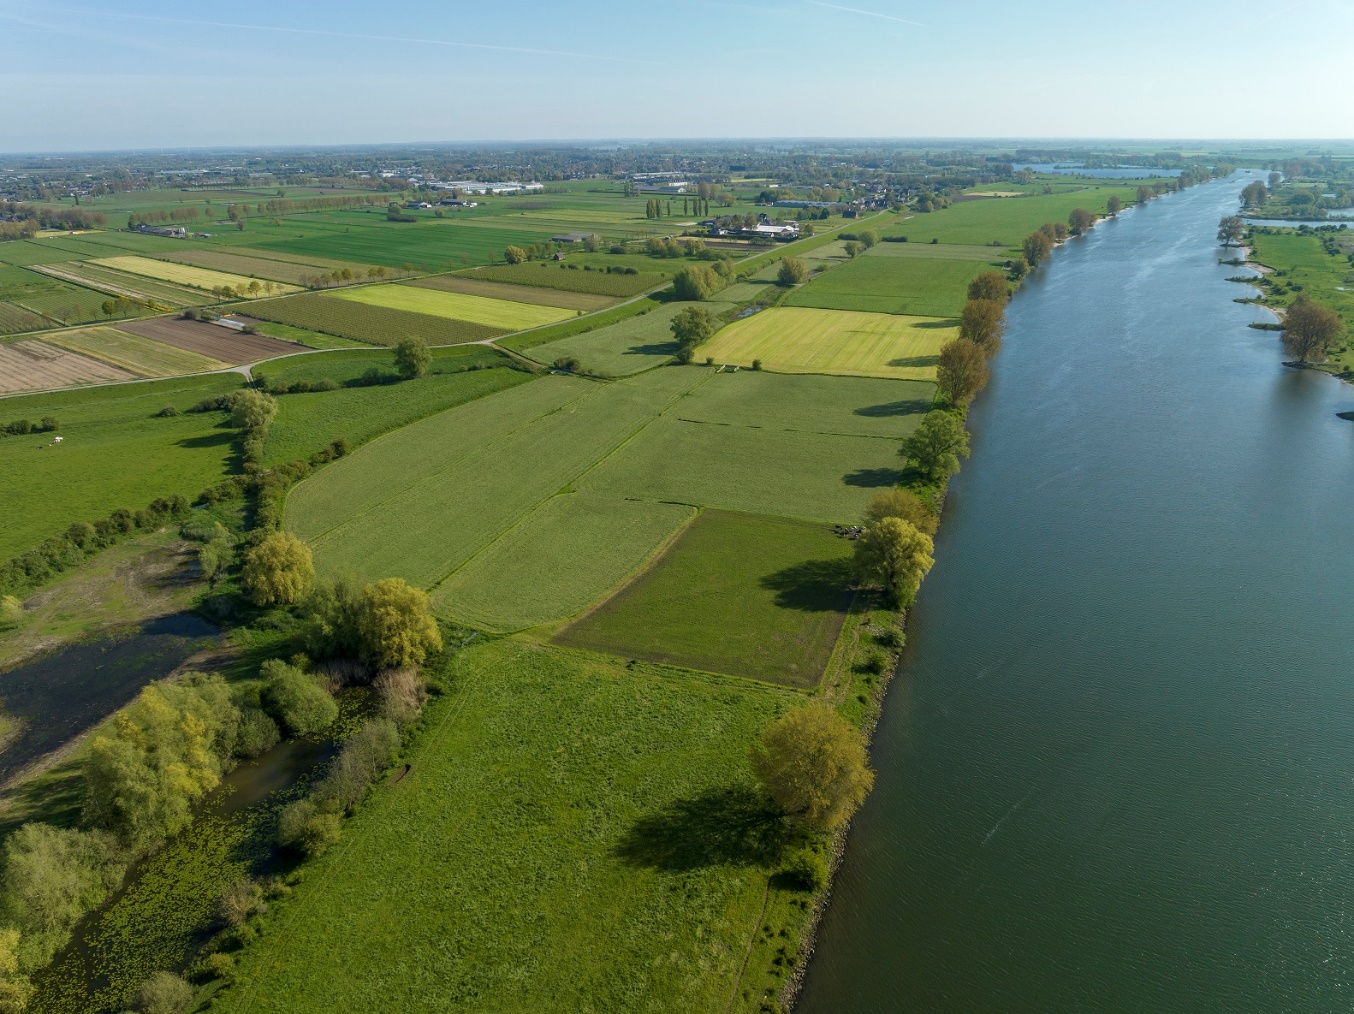 Gebied Casterens Hoeve Oever vanuit de lucht gezien. Dit is een oeverstrook langs de Maas die bestaat uit grasland en bomen en rechts grenst aan de Maas.